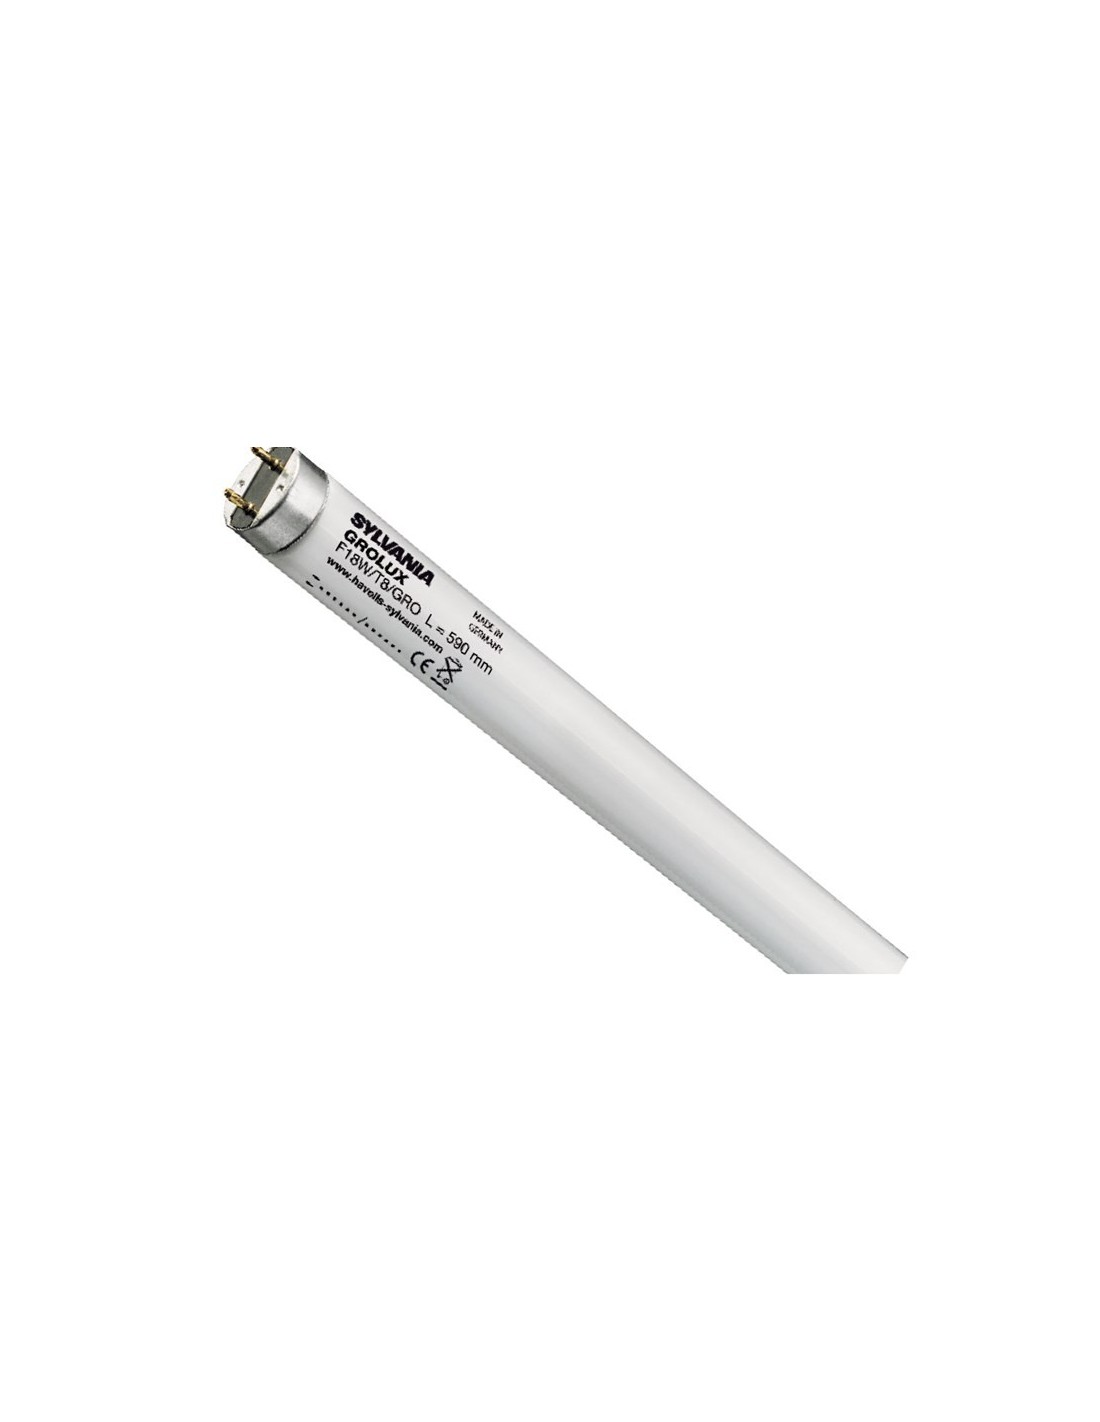 58w-lámpara Daylight OSRAM tubo fluorescente LUMILUX-t8 865 la luz del día 